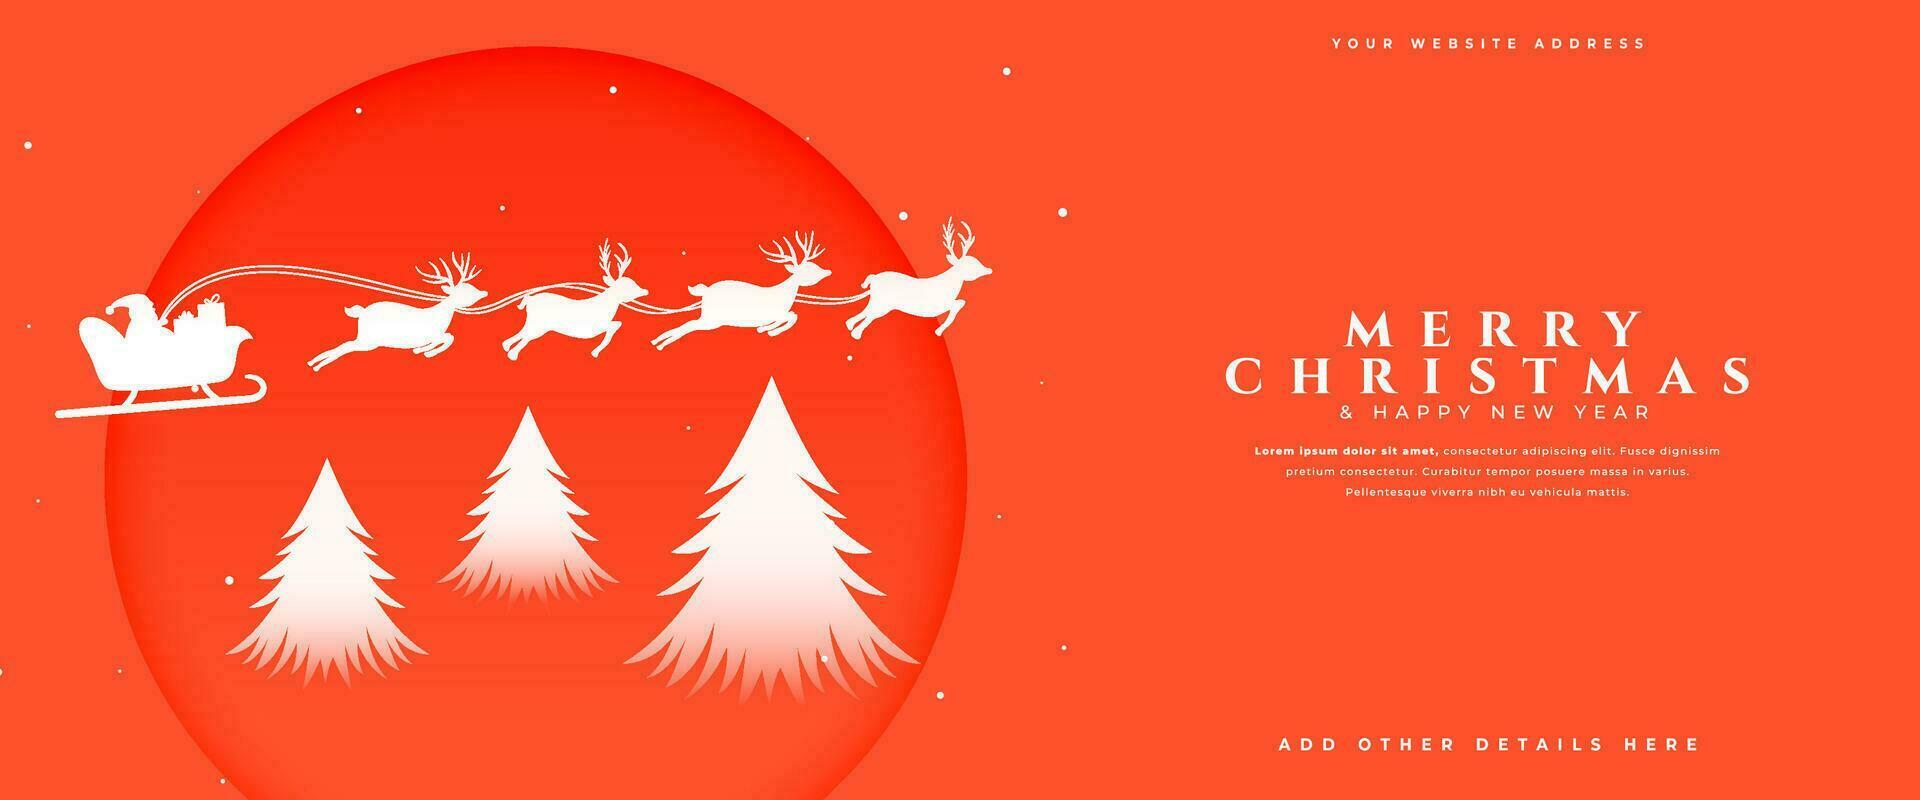 fröhlich Weihnachten Vorabend wünscht sich Banner mit fliegend Santa Schlitten Design vektor